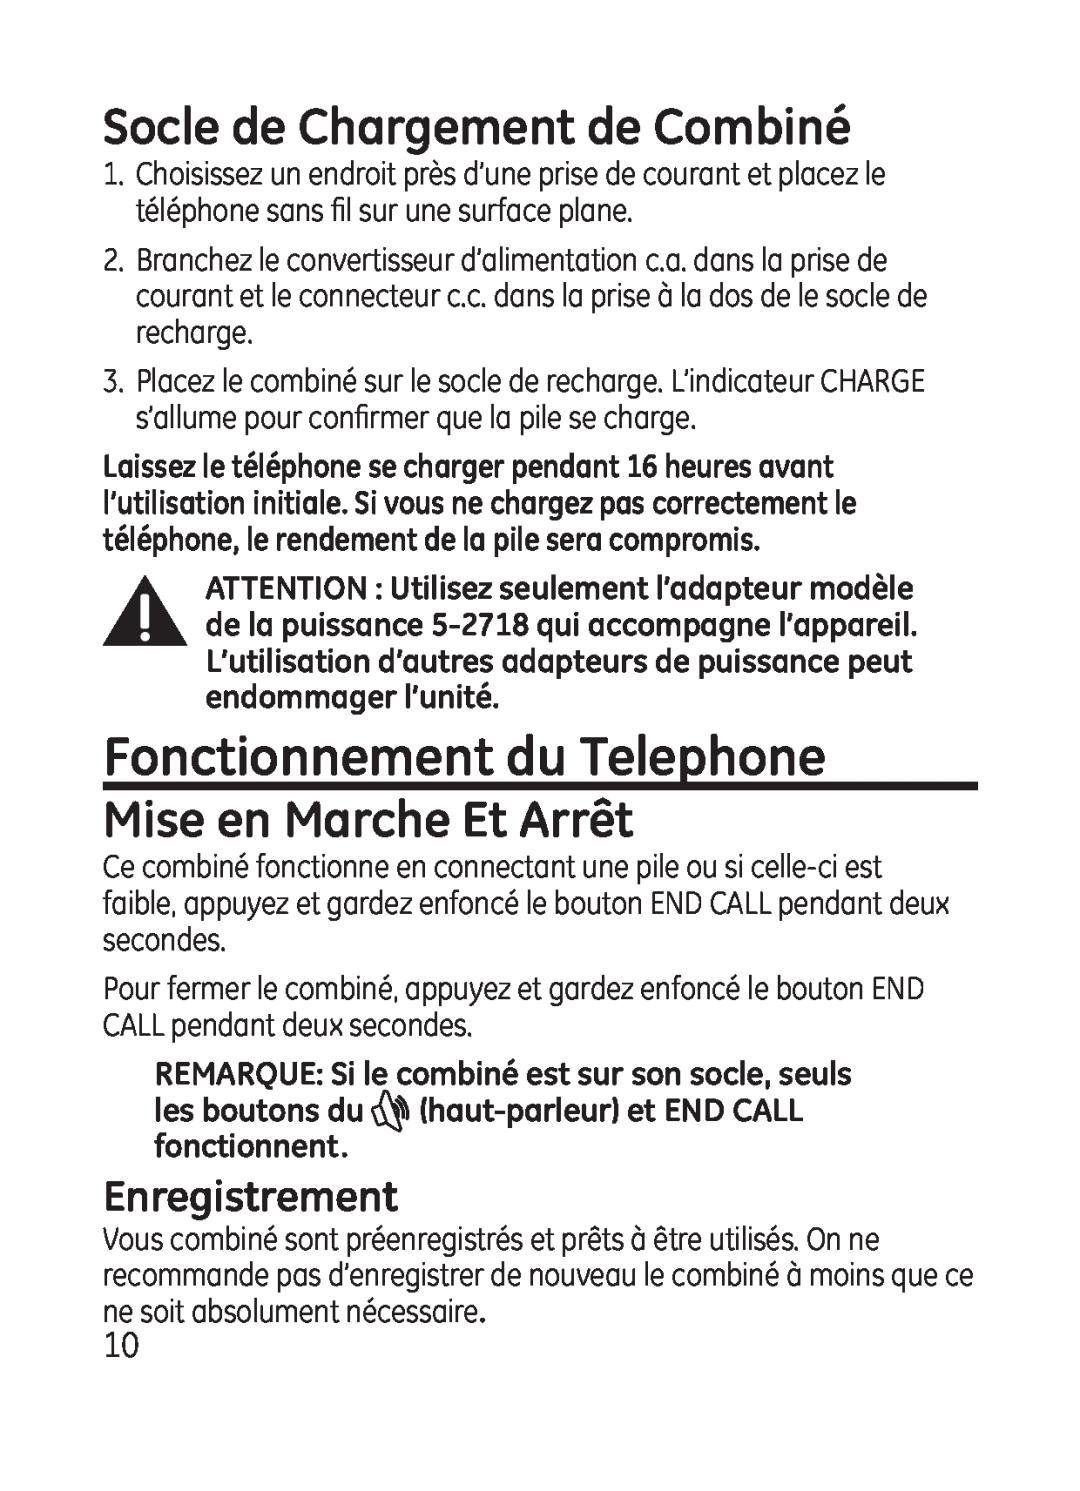 GE 28301 manual Fonctionnement du Telephone, Socle de Chargement de Combiné, Mise en Marche Et Arrêt, Enregistrement 